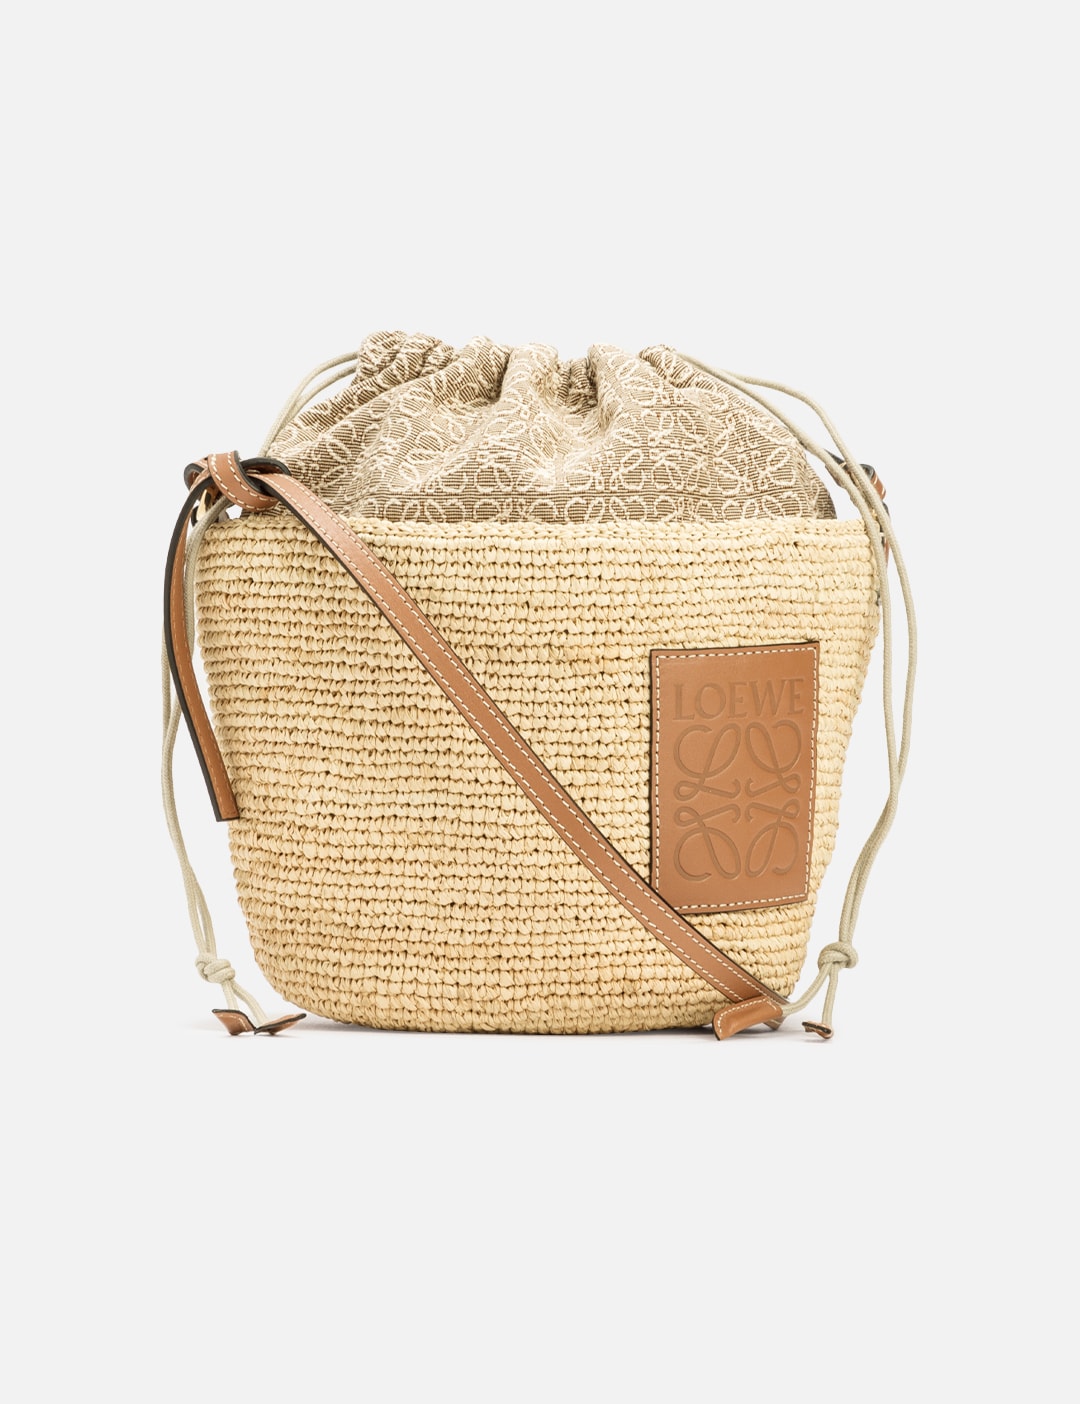 Loewe Pochette Bag in Natural & Tan